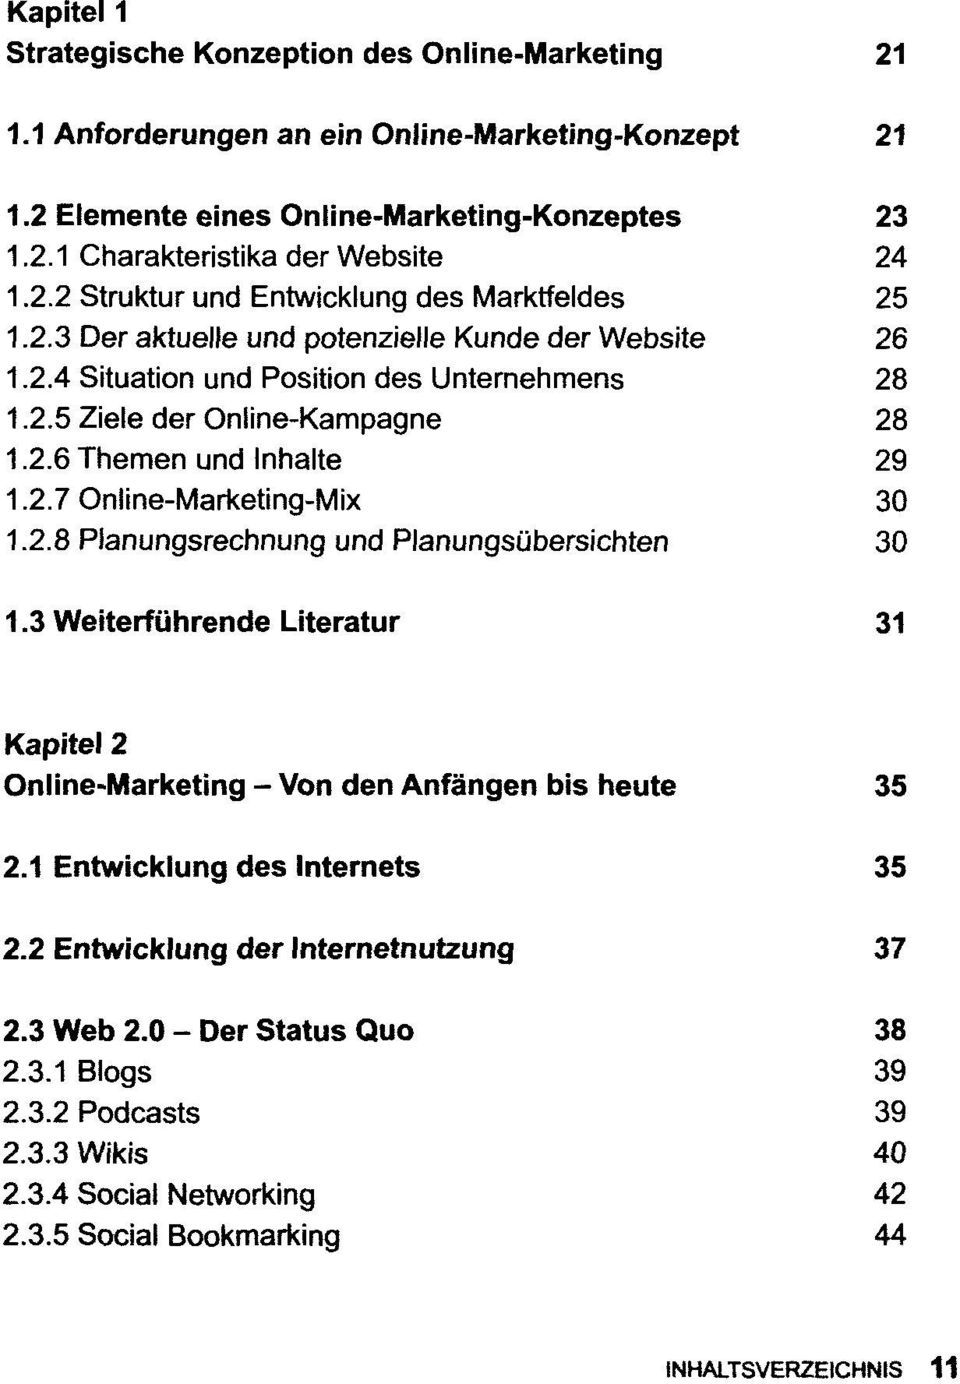 2.7 Online-Marketing-Mix 30 1.2.8 Planungsrechnung und Planungsübersichten 30 1.3 Weiterführende Literatur 31 Kapitel 2 Online-Marketing - Von den Anfängen bis heute 35 2.